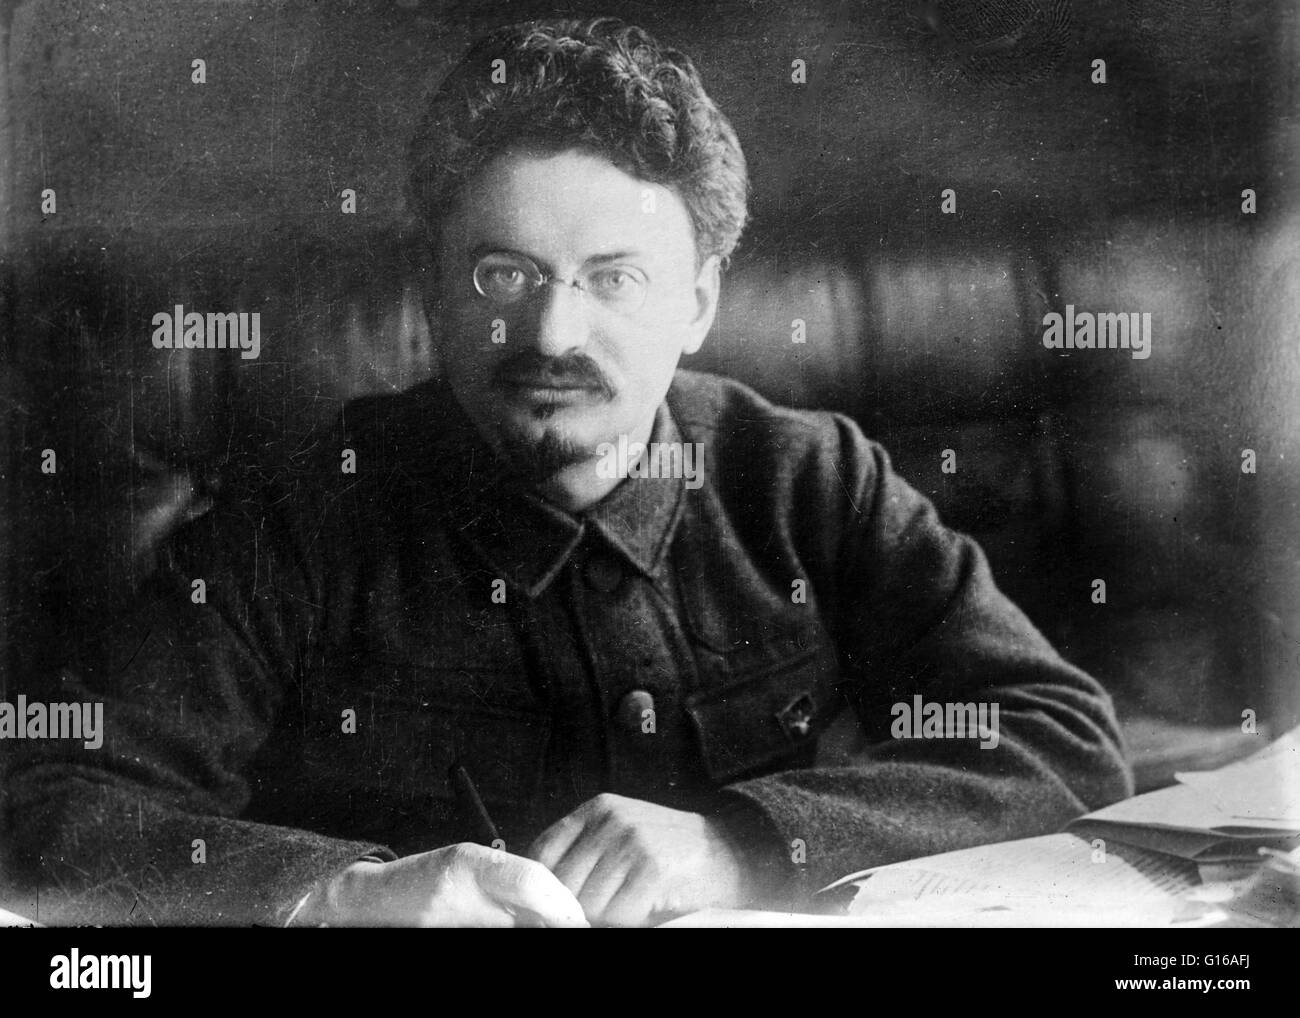 Bain-News-Service Foto von Trotzki. Kein Datum auf Beschriftung Karte aufgezeichnet. Leon Trotsky (7. November 1879 - 21. August 1940) war ein russischer marxistischer revolutionär und Theoretiker. Er schloss sich den Bolschewiki vor der Oktoberrevolution 1917 und wurde ein großer fi Stockfoto